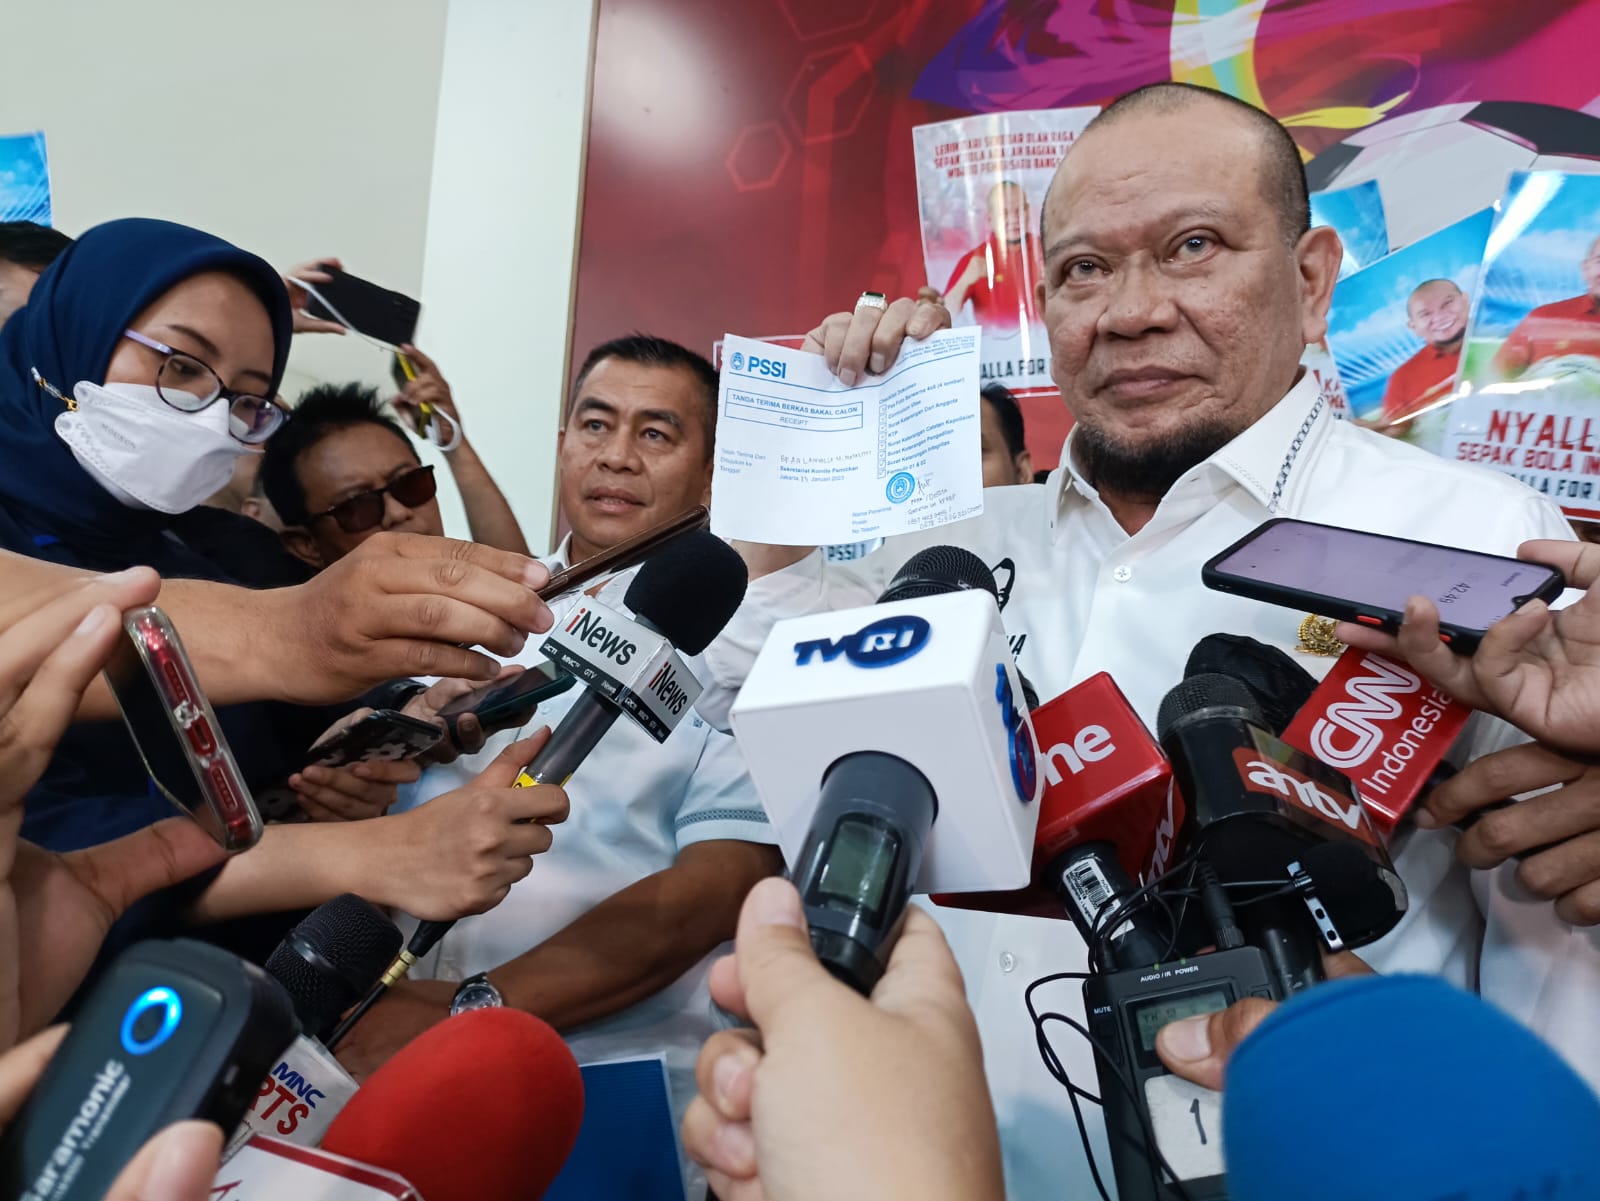 La Nyalla Pastikan Berantas Mafia Bola jika Terpilih Jadi Ketua Umum PSSI 2023-2027